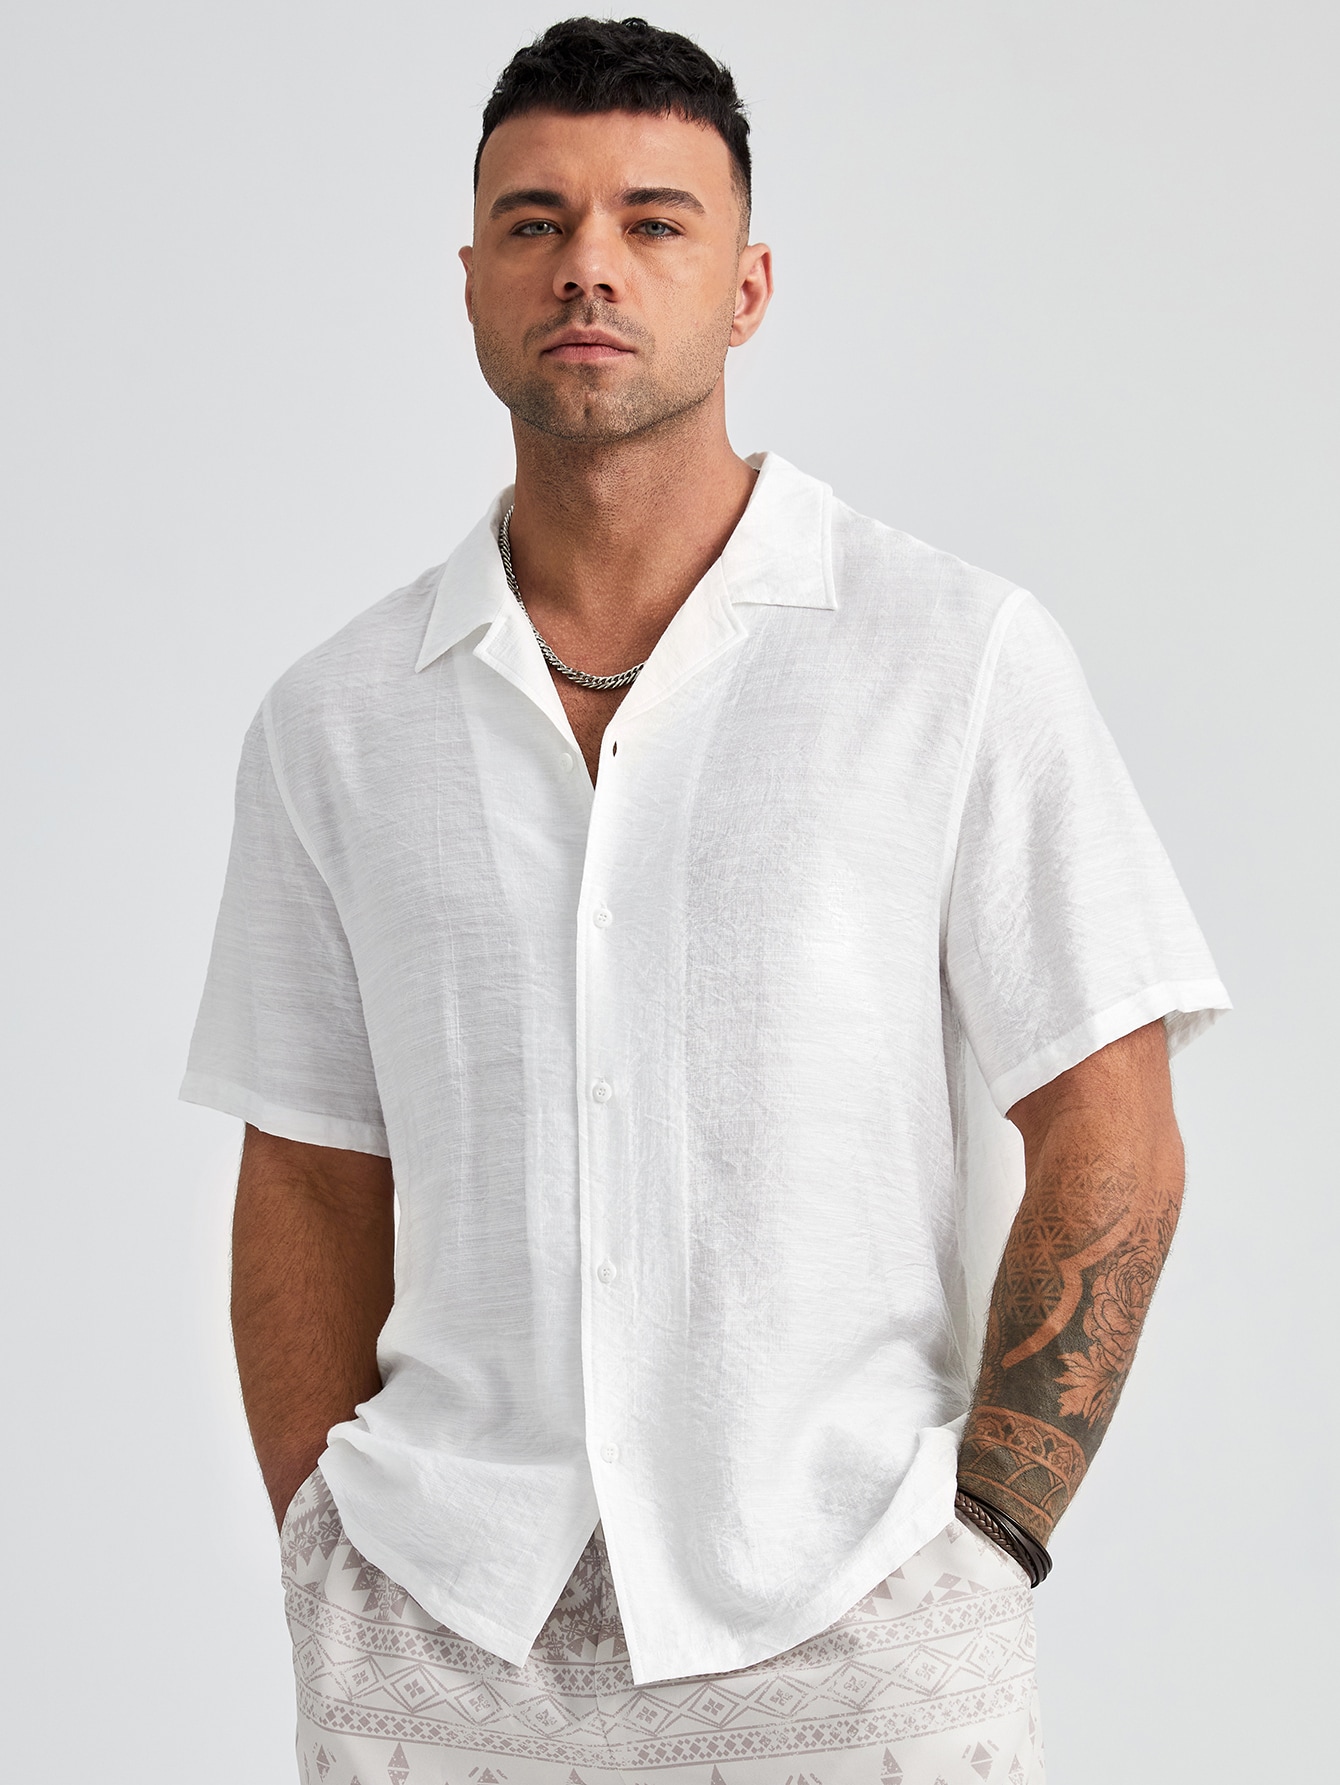 Manfinity Homme Мужская однотонная тканая рубашка больших размеров с коротким рукавом больших размеров, белый